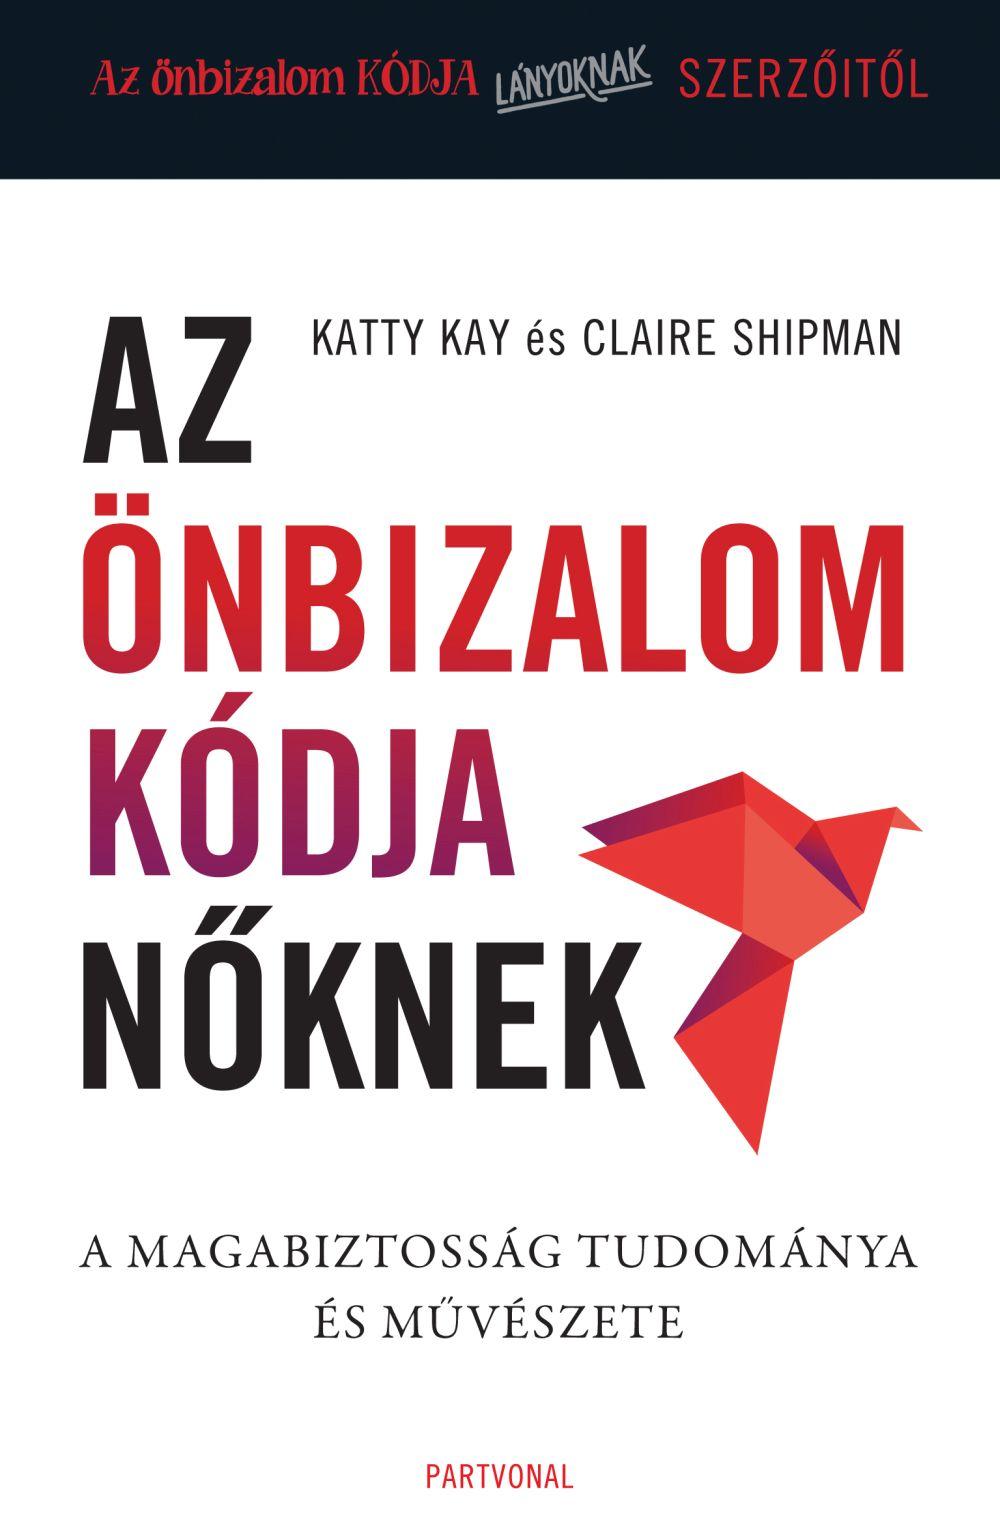 Katty Kay - Claire Shipman - Az önbizalom kódja nőknek - A magabiztosság tudománya és művészete